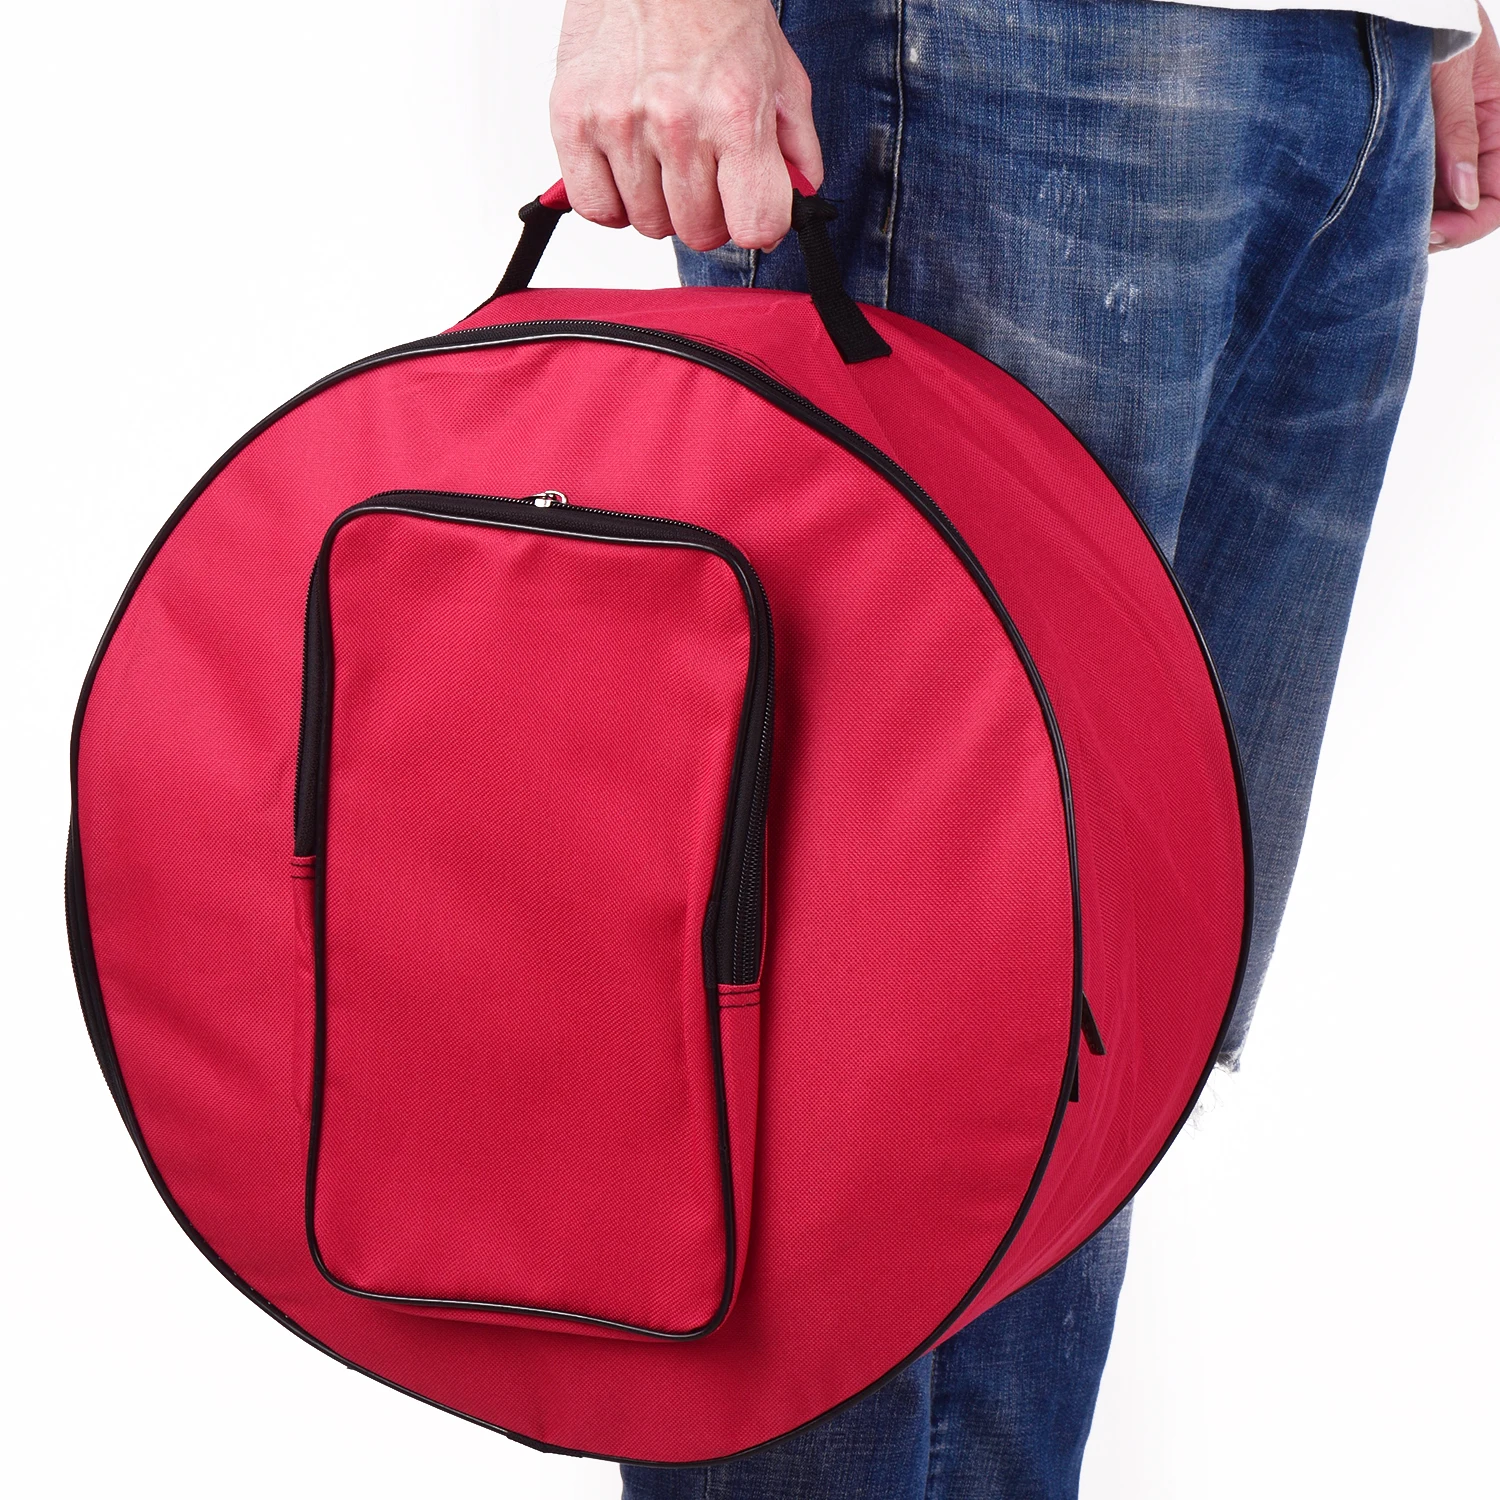 Мини-сумка для барабана, чехол-рюкзак с плечевым ремнем, внешние карманы, аксессуары для ударных инструментов